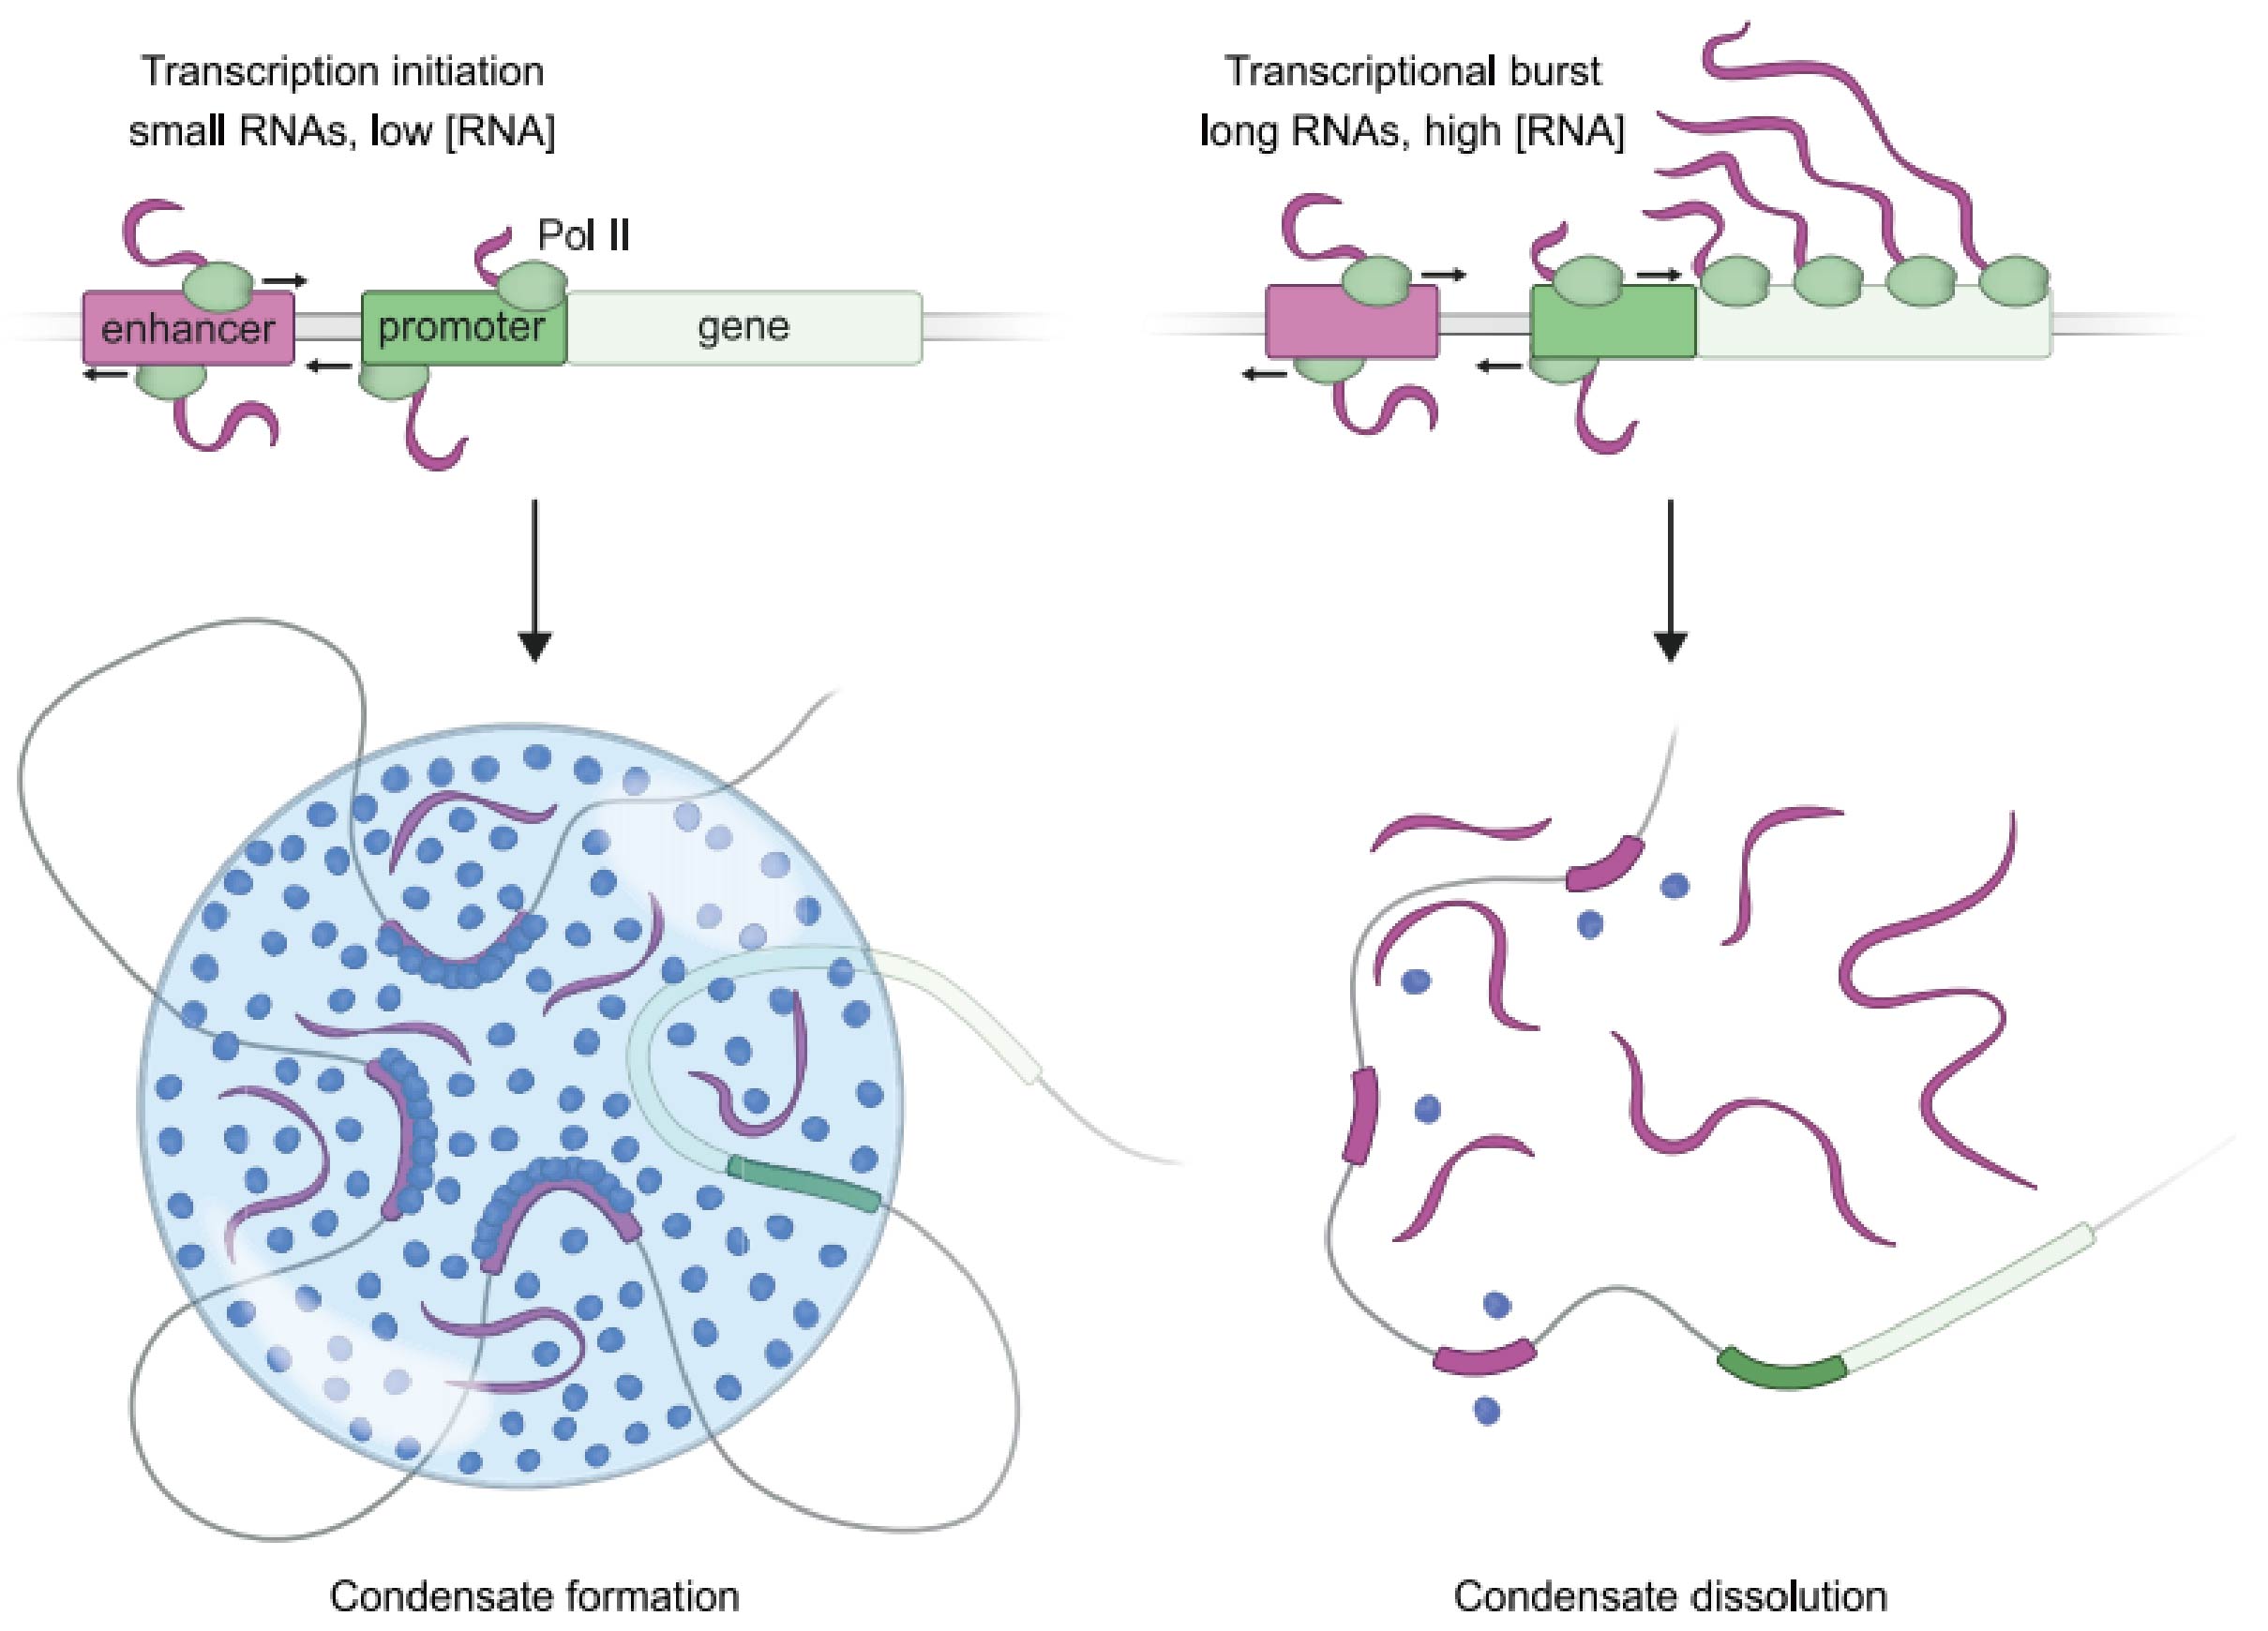 转录凝聚物的 RNA 介导反馈控制模型。